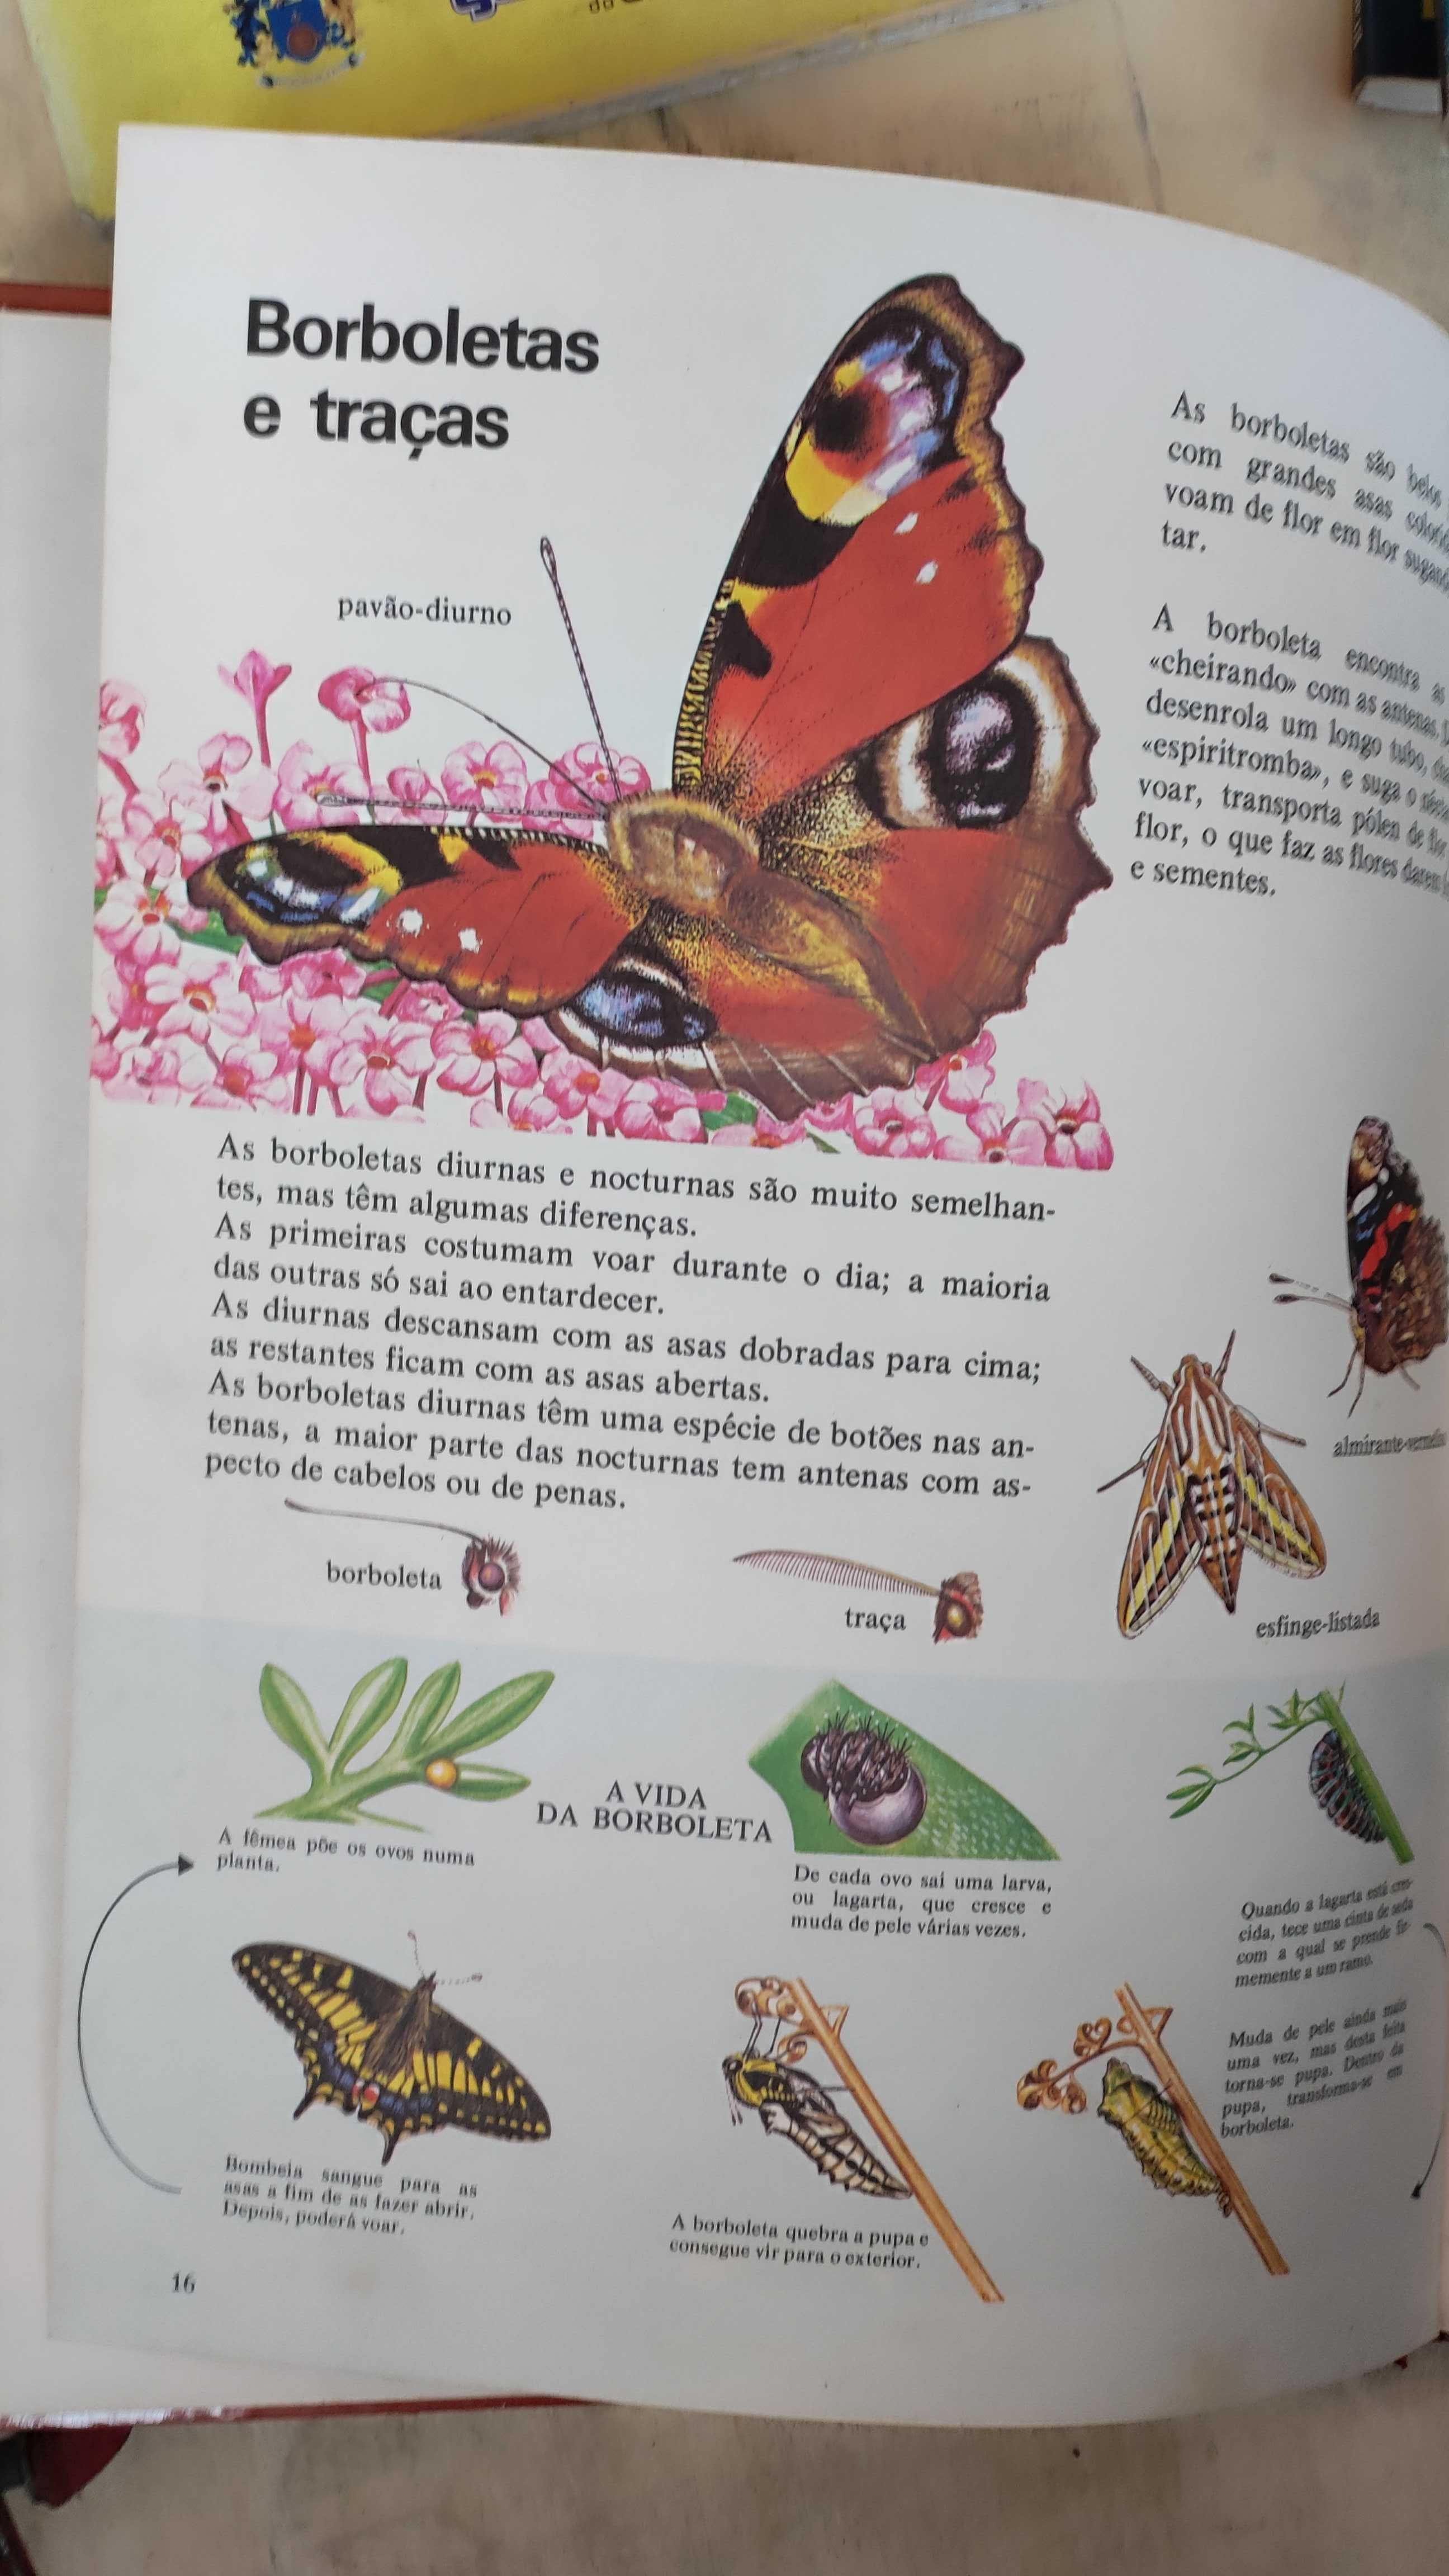 Livro educativo  Os Insectos